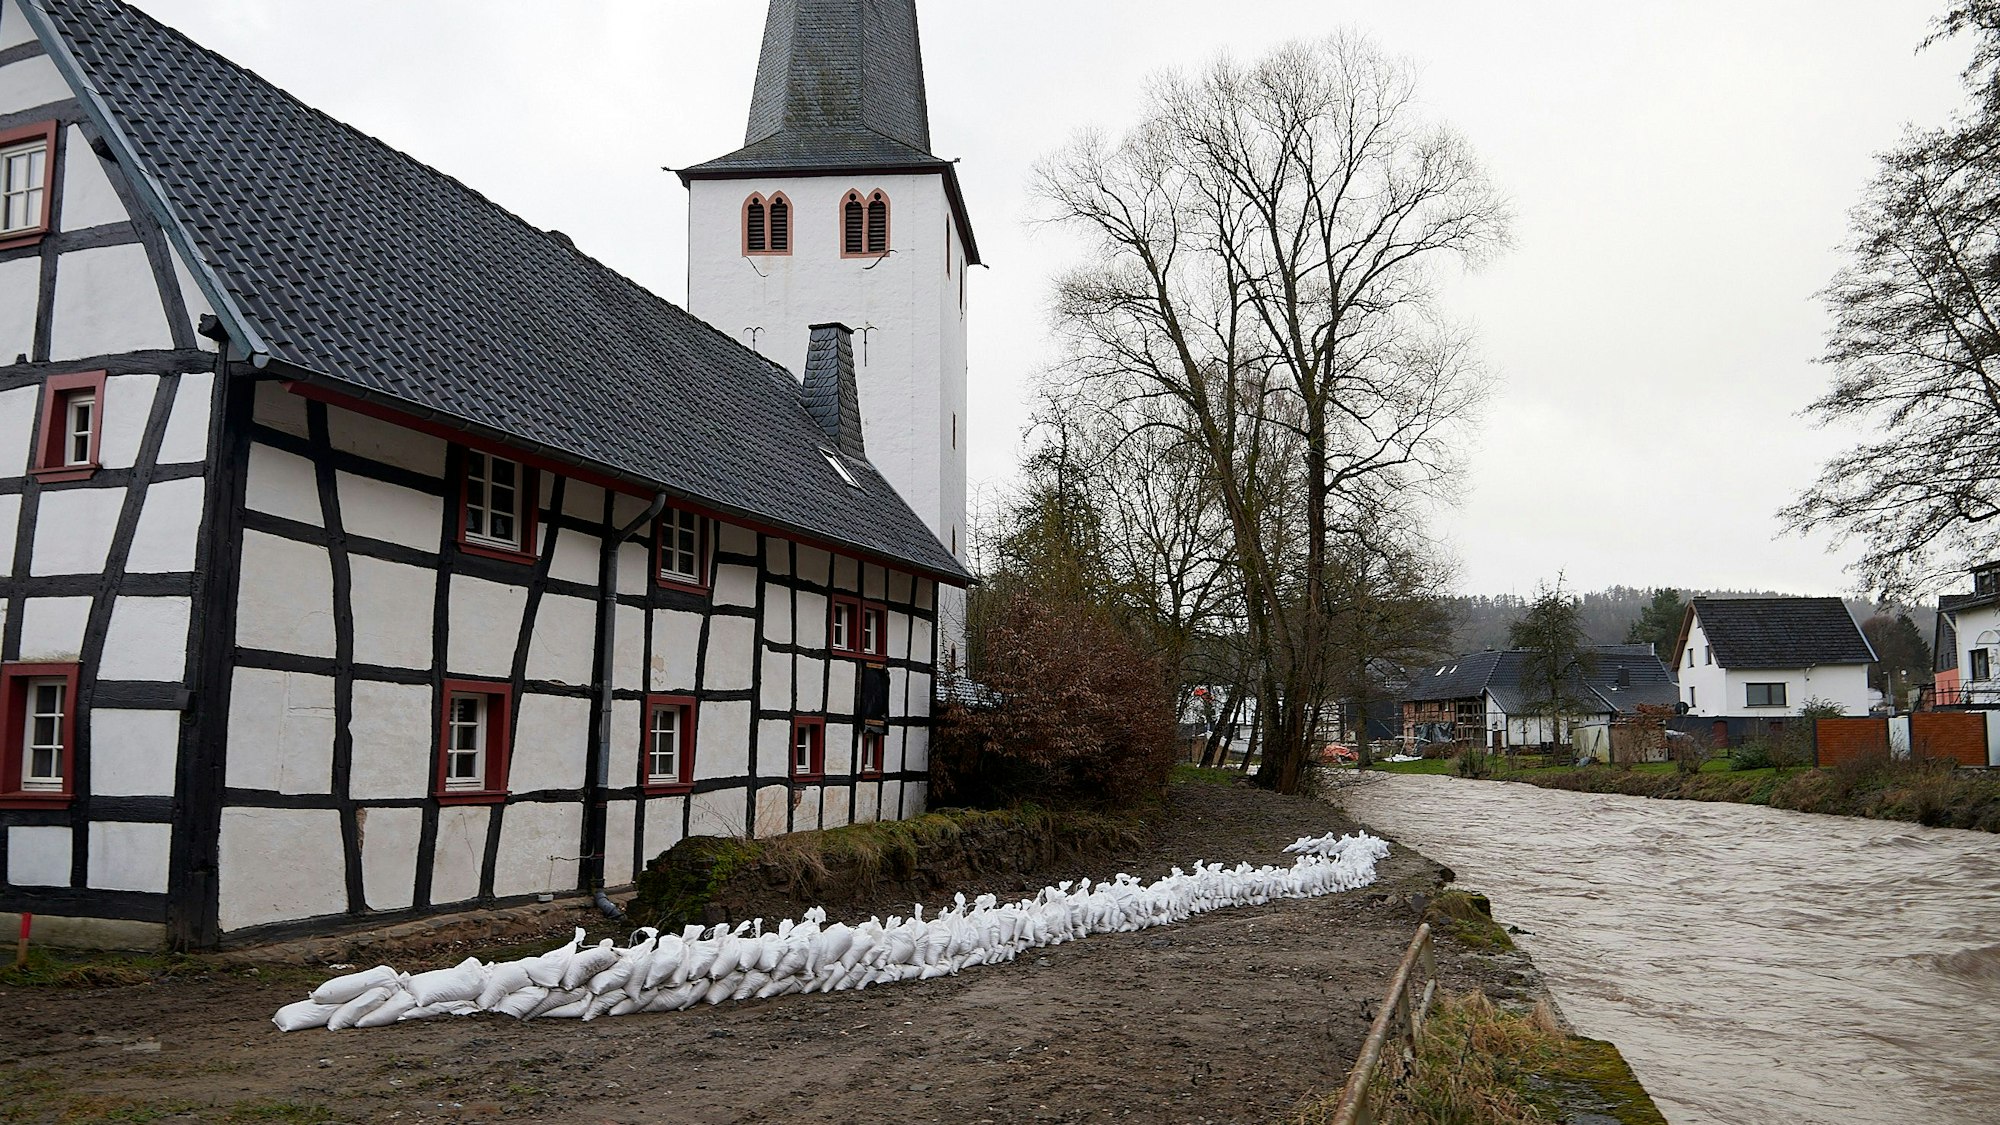 Eine Mauer aus weißen Sandsäcken ist in der Mitte des Bildes zu sehen. Rechts ist die Hochwasser führende Olef, links ein Fachwerkhaus, das durch die Säcke geschützt werden soll.